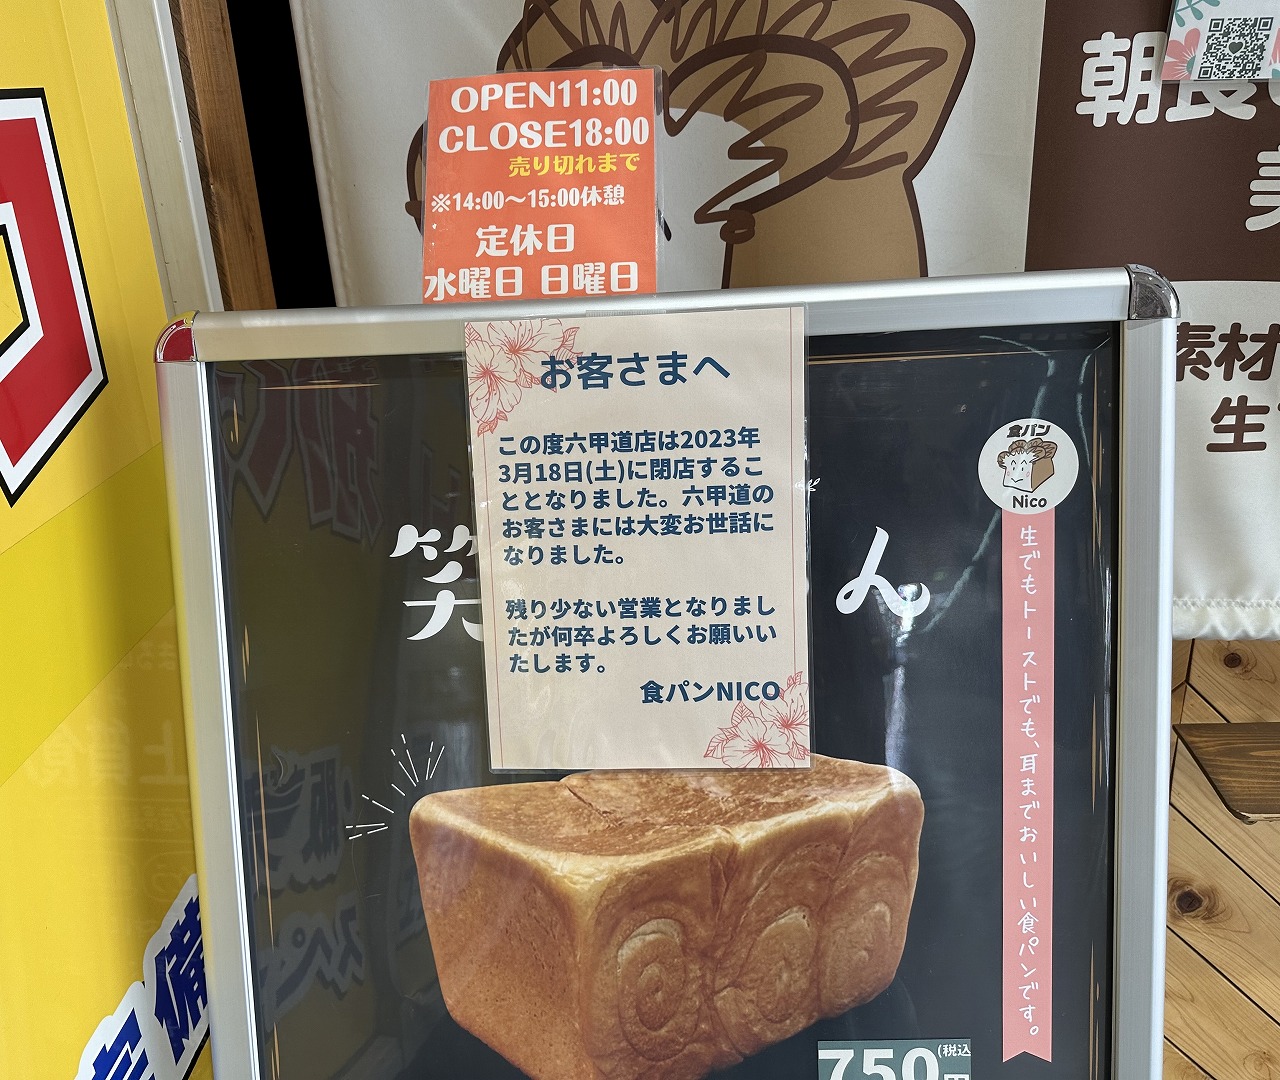 食パン専門店「食パン Nico 六甲道」